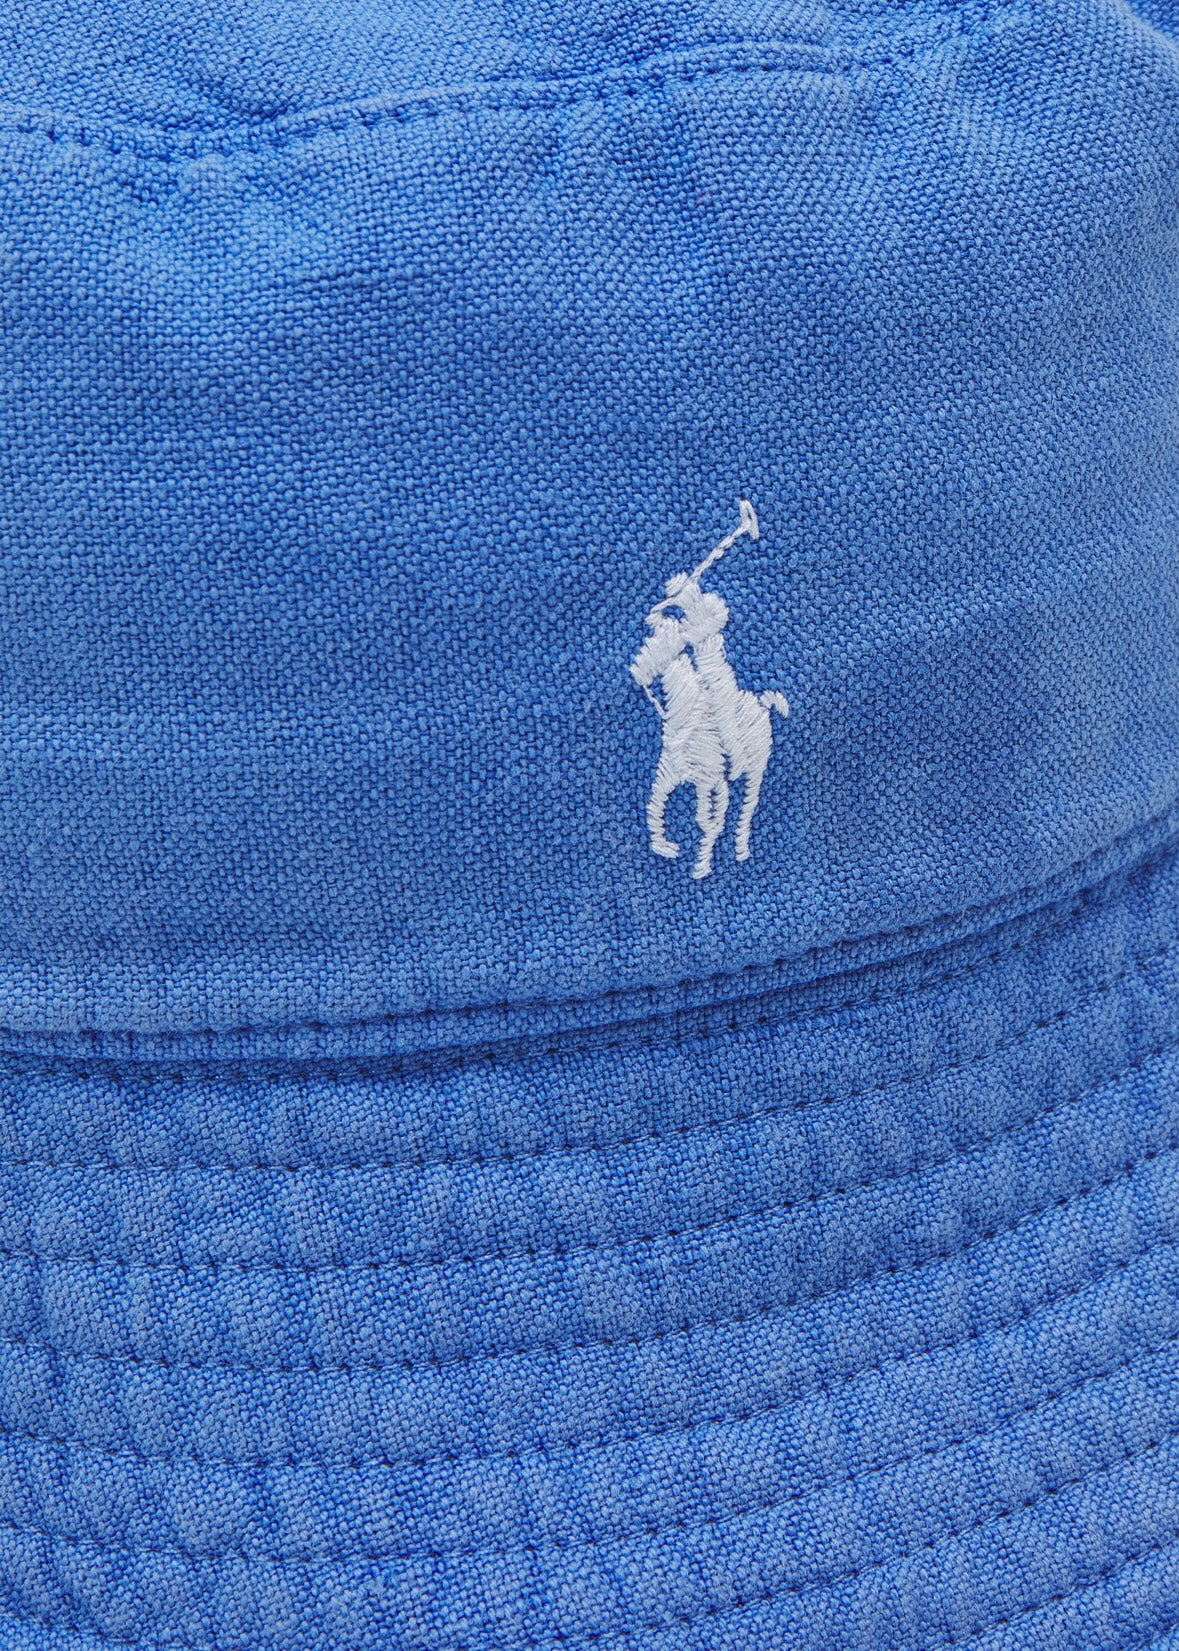 Polo Ralph Lauren Bucket hat - Bermuda